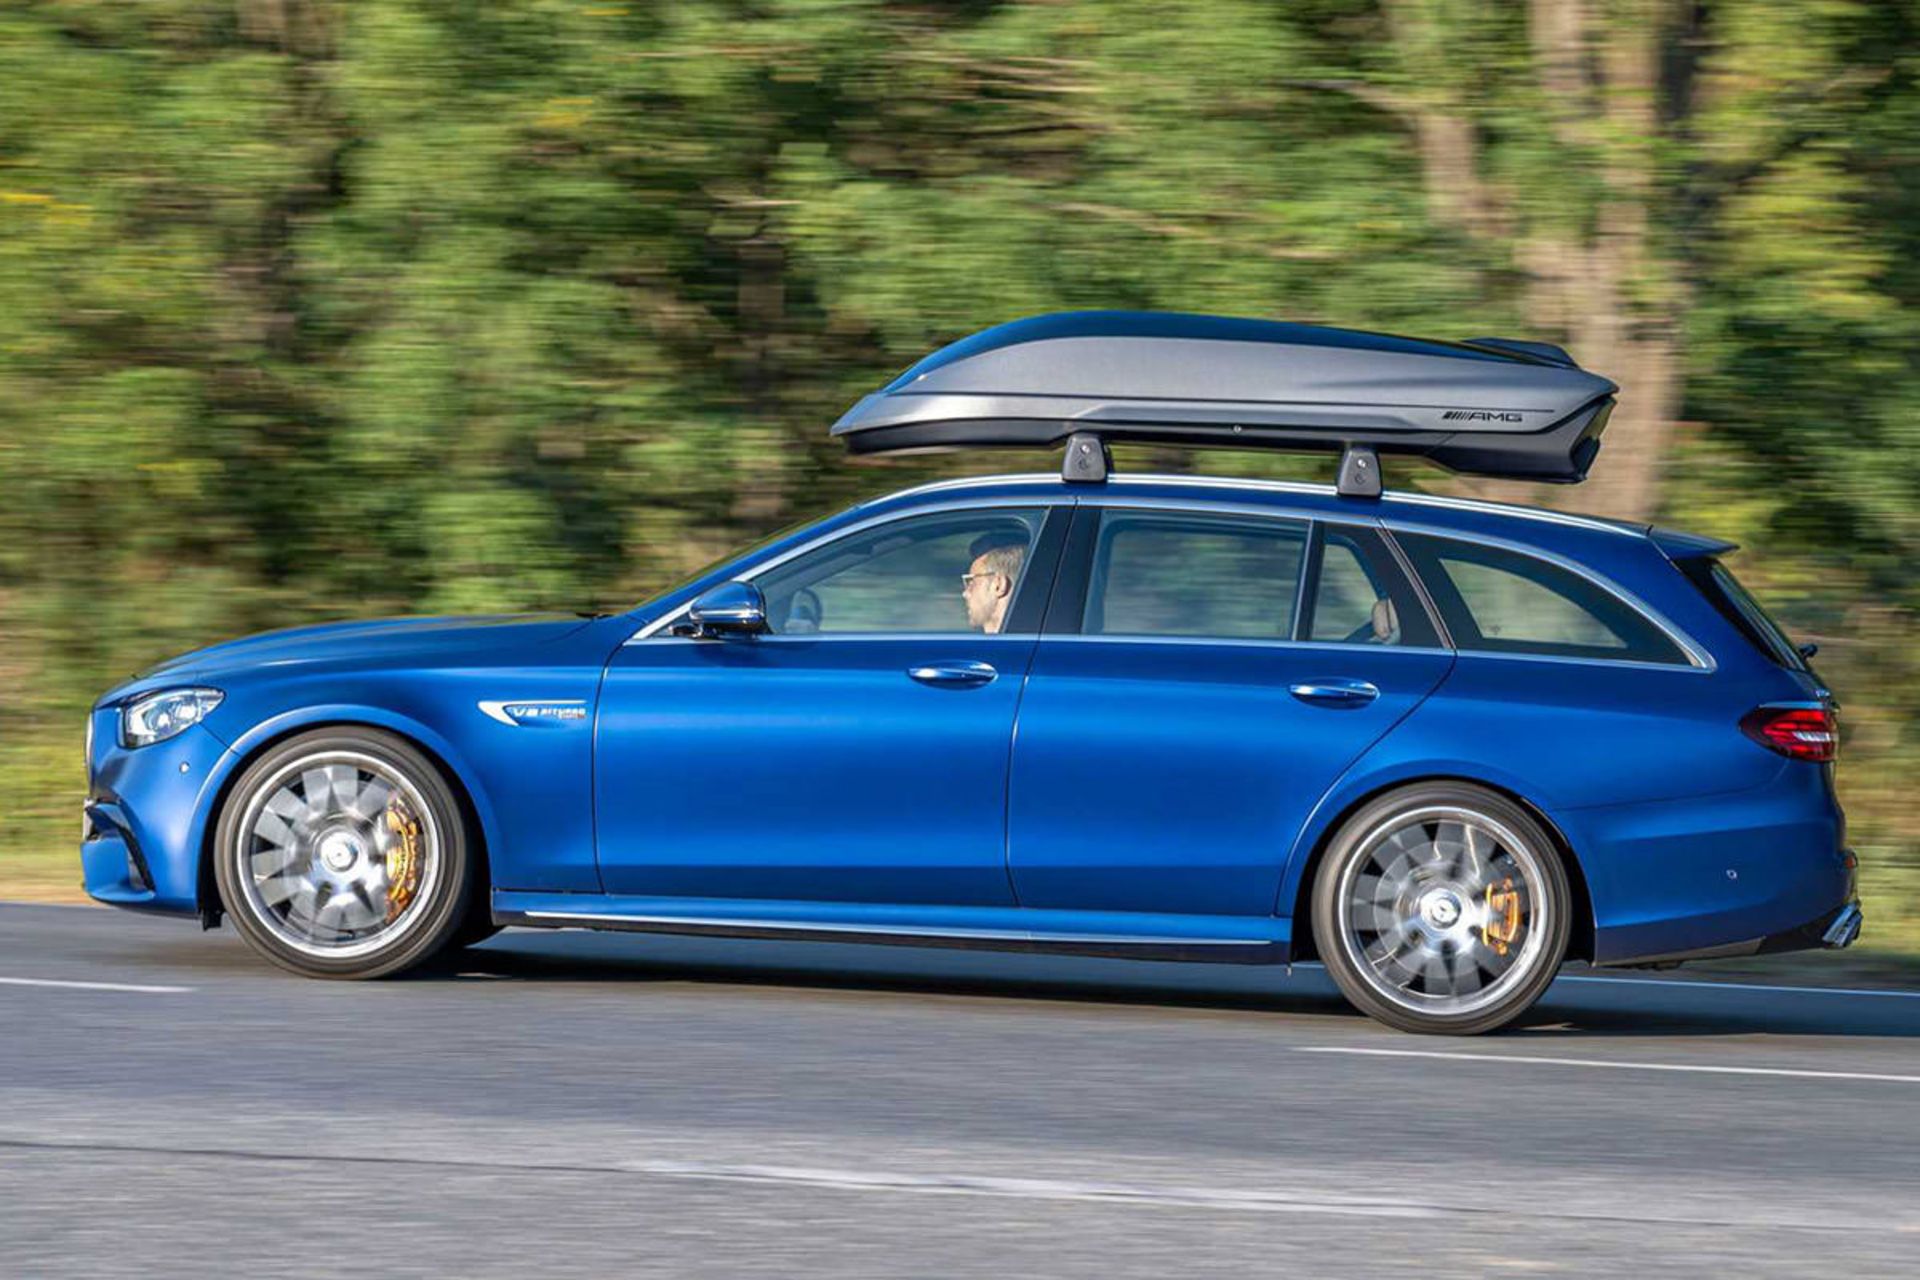 نمای جانبی خودرو استیشن واگن مرسدس بنز / Mercedes Benz آبی رنگ مجهز به باربند سقفی AMG